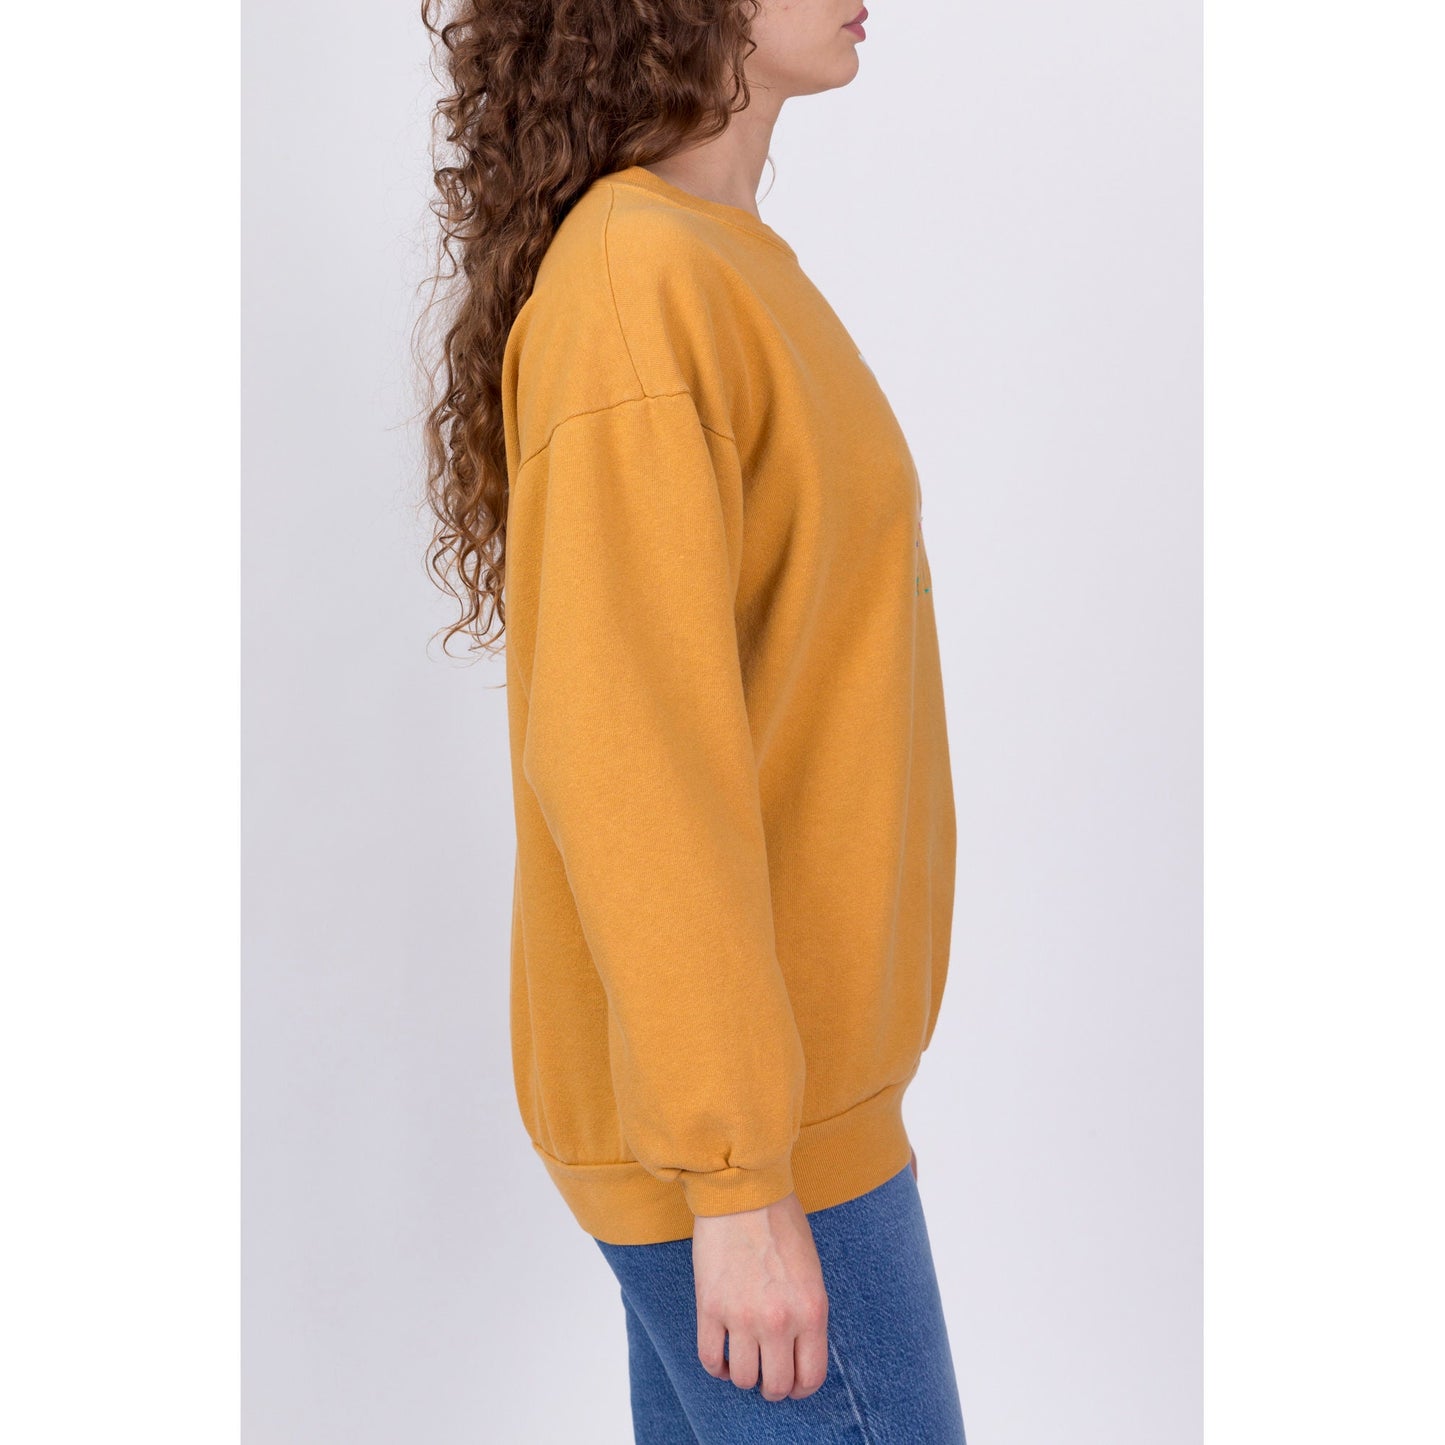 90s Guess USA Mustard Yellow Sweatshirt - One Size 